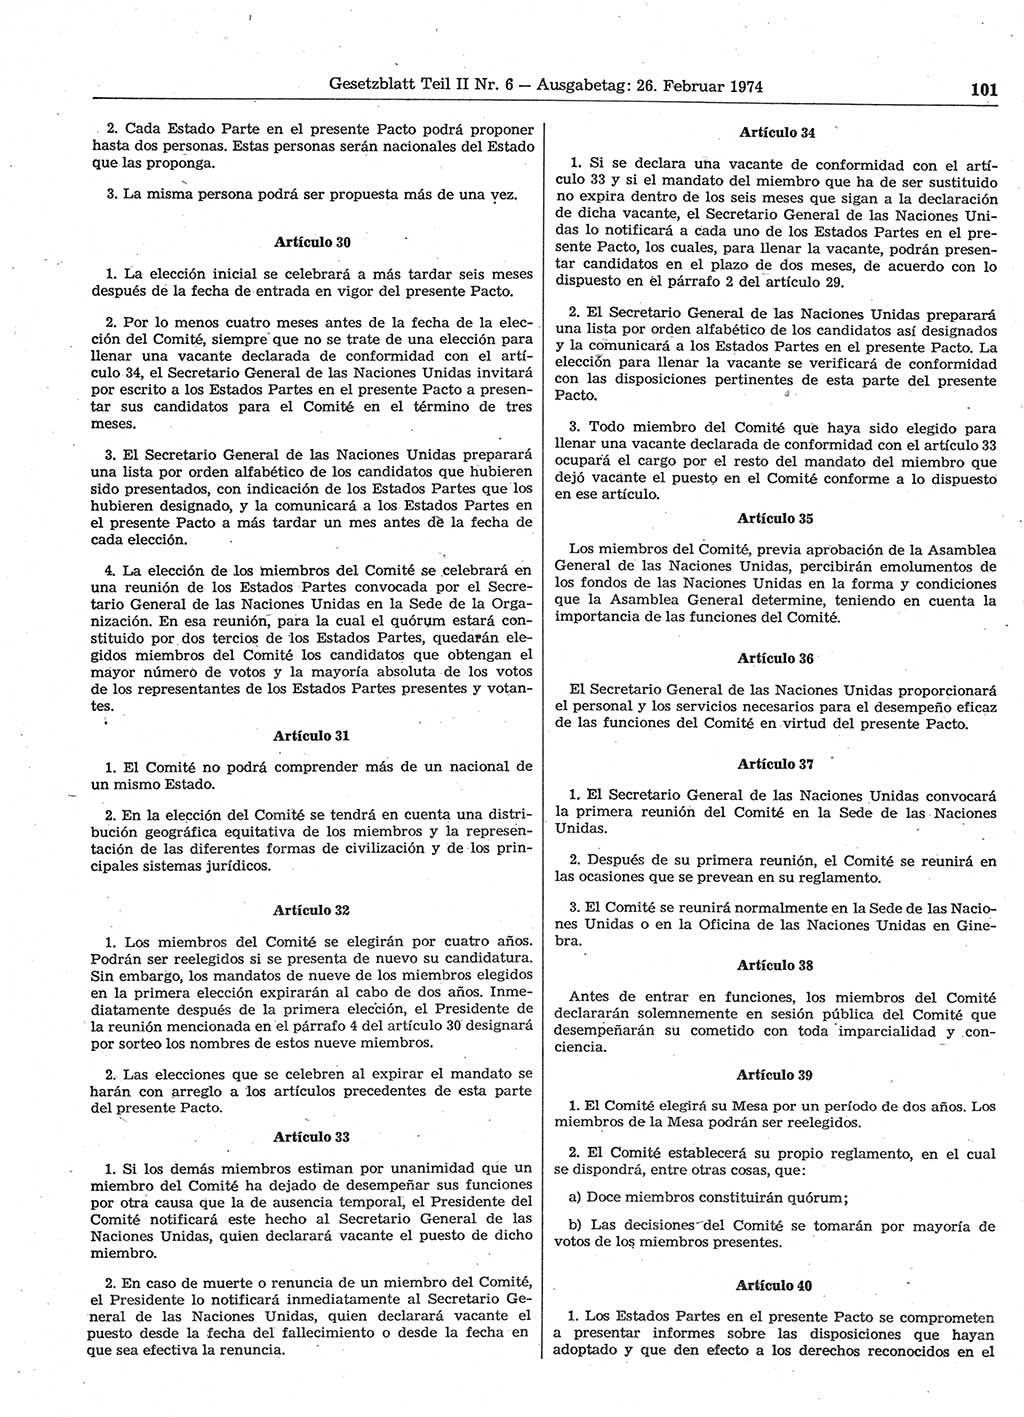 Gesetzblatt (GBl.) der Deutschen Demokratischen Republik (DDR) Teil ⅠⅠ 1974, Seite 101 (GBl. DDR ⅠⅠ 1974, S. 101)